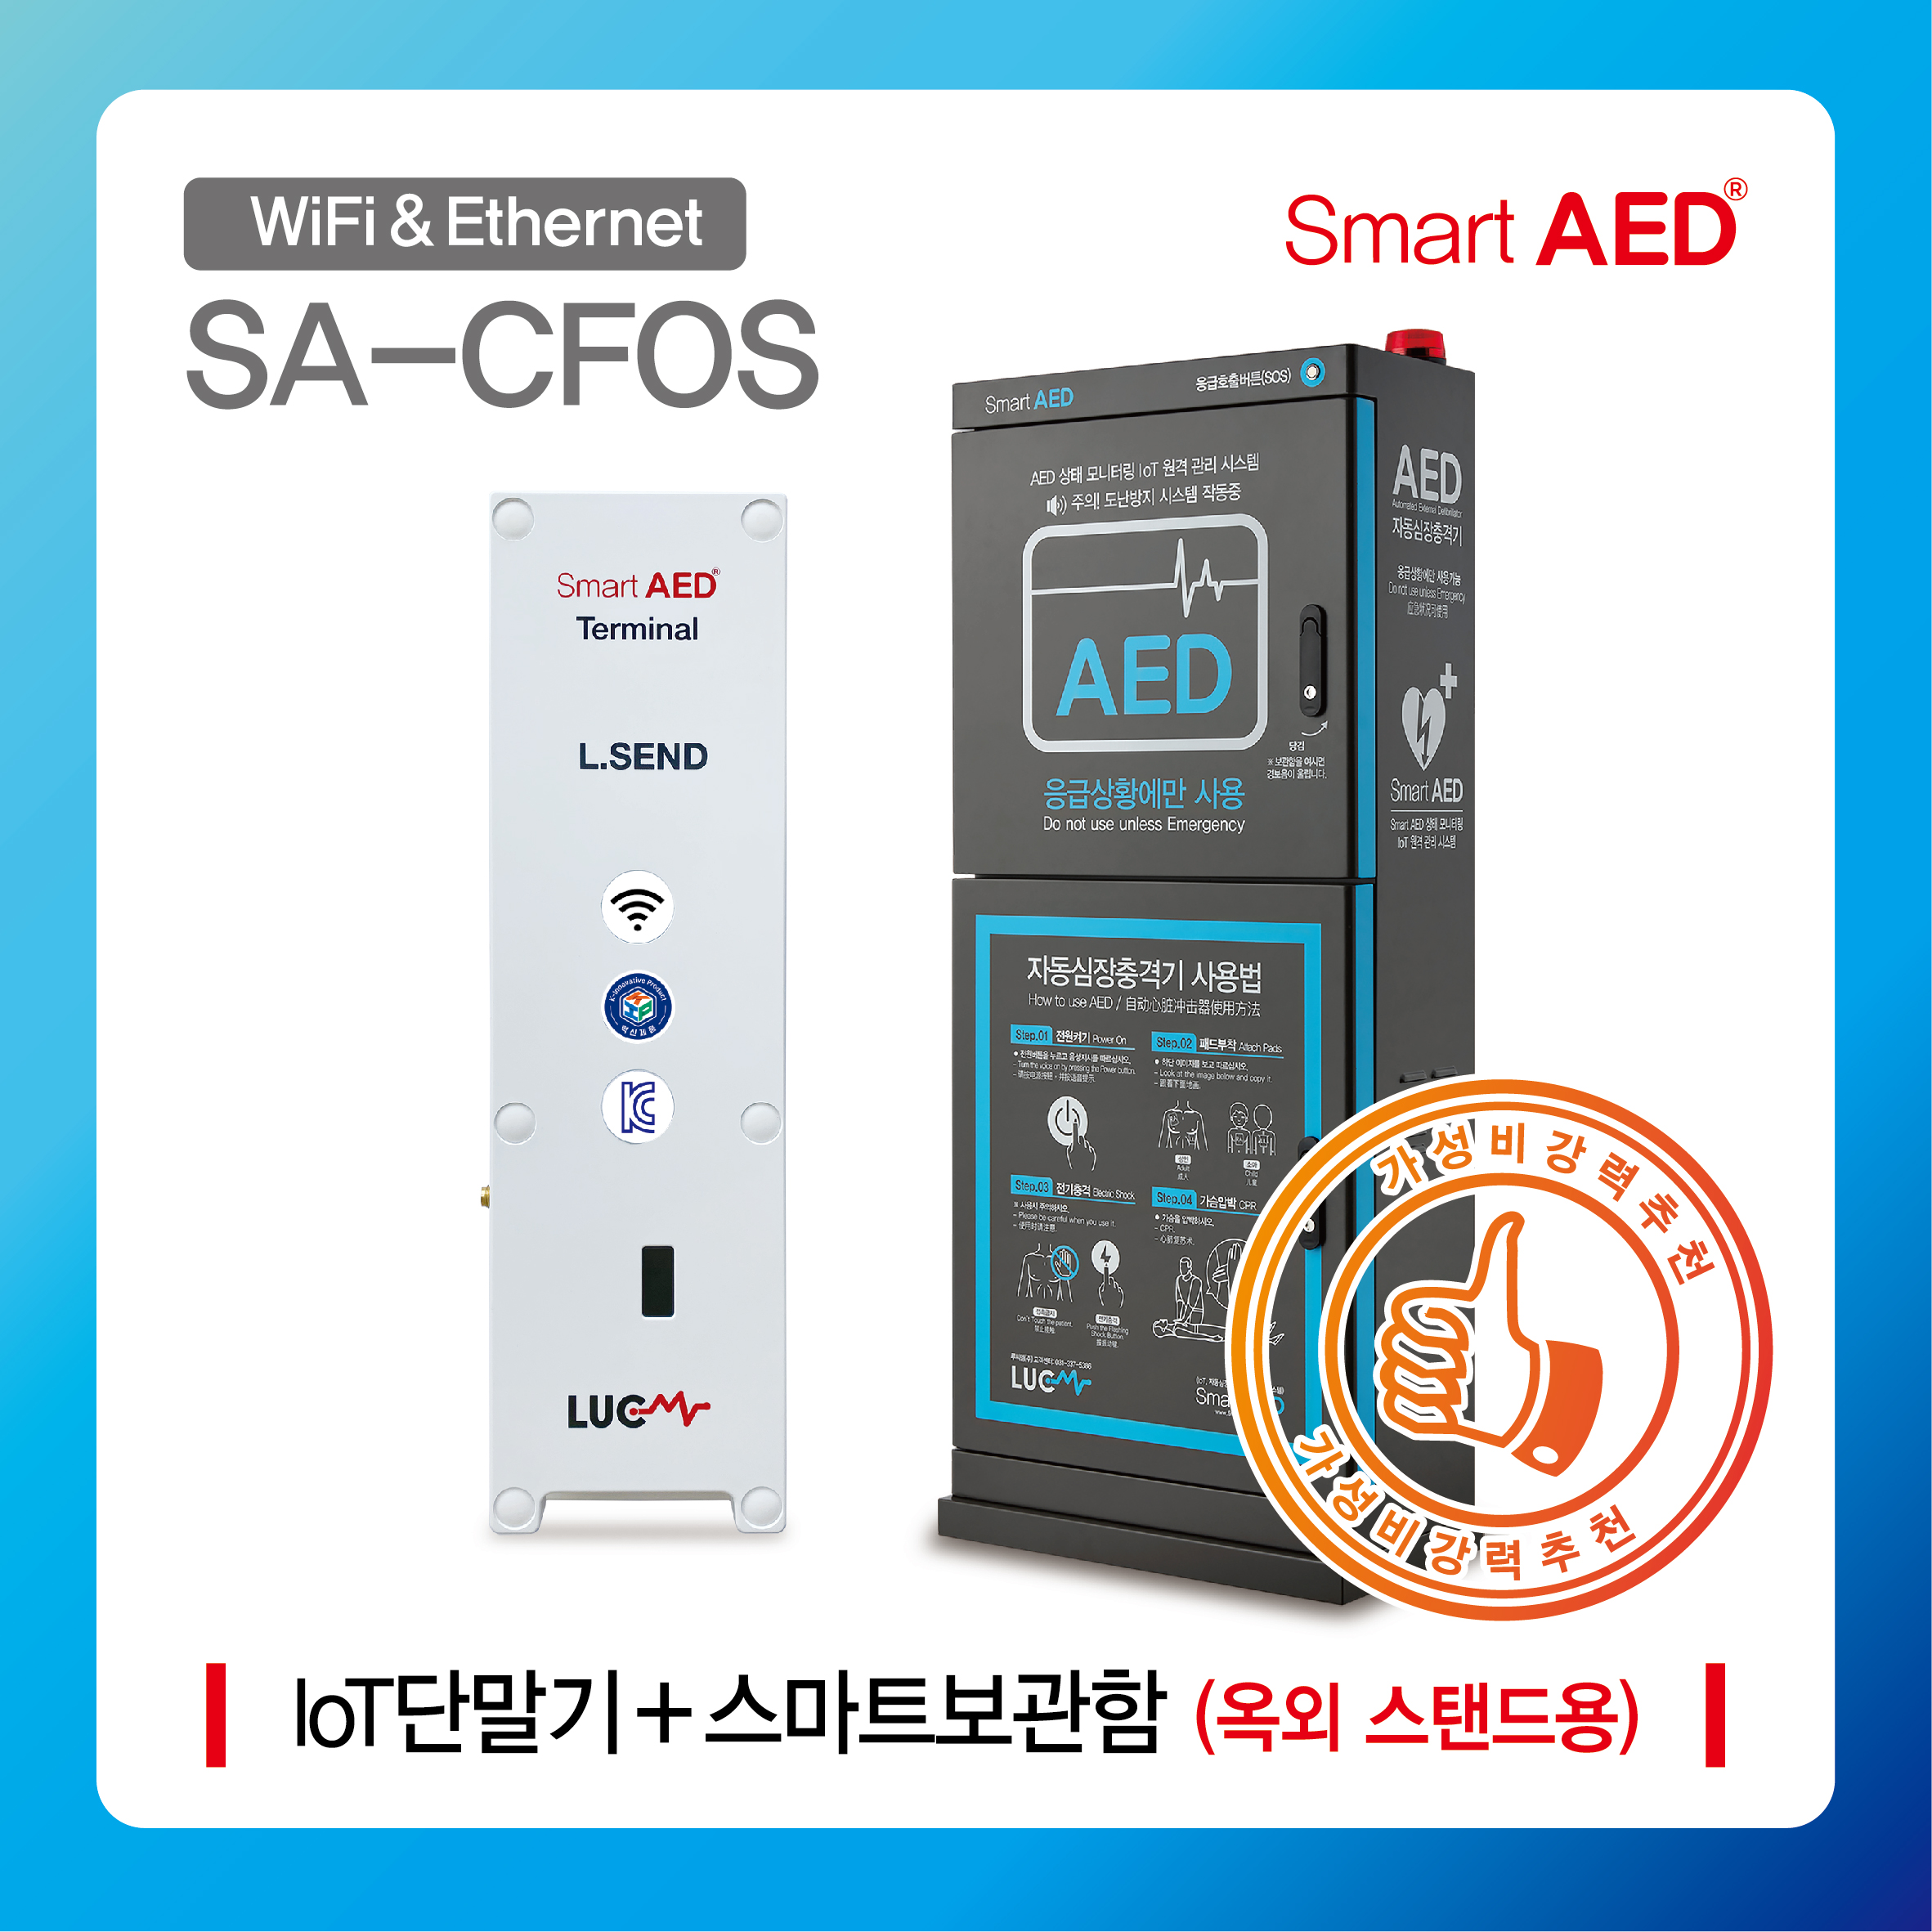 [ SA-CFOS ] 스마트 AED 통합모니터링 장치 및 보관함(옥외 스탠드형)